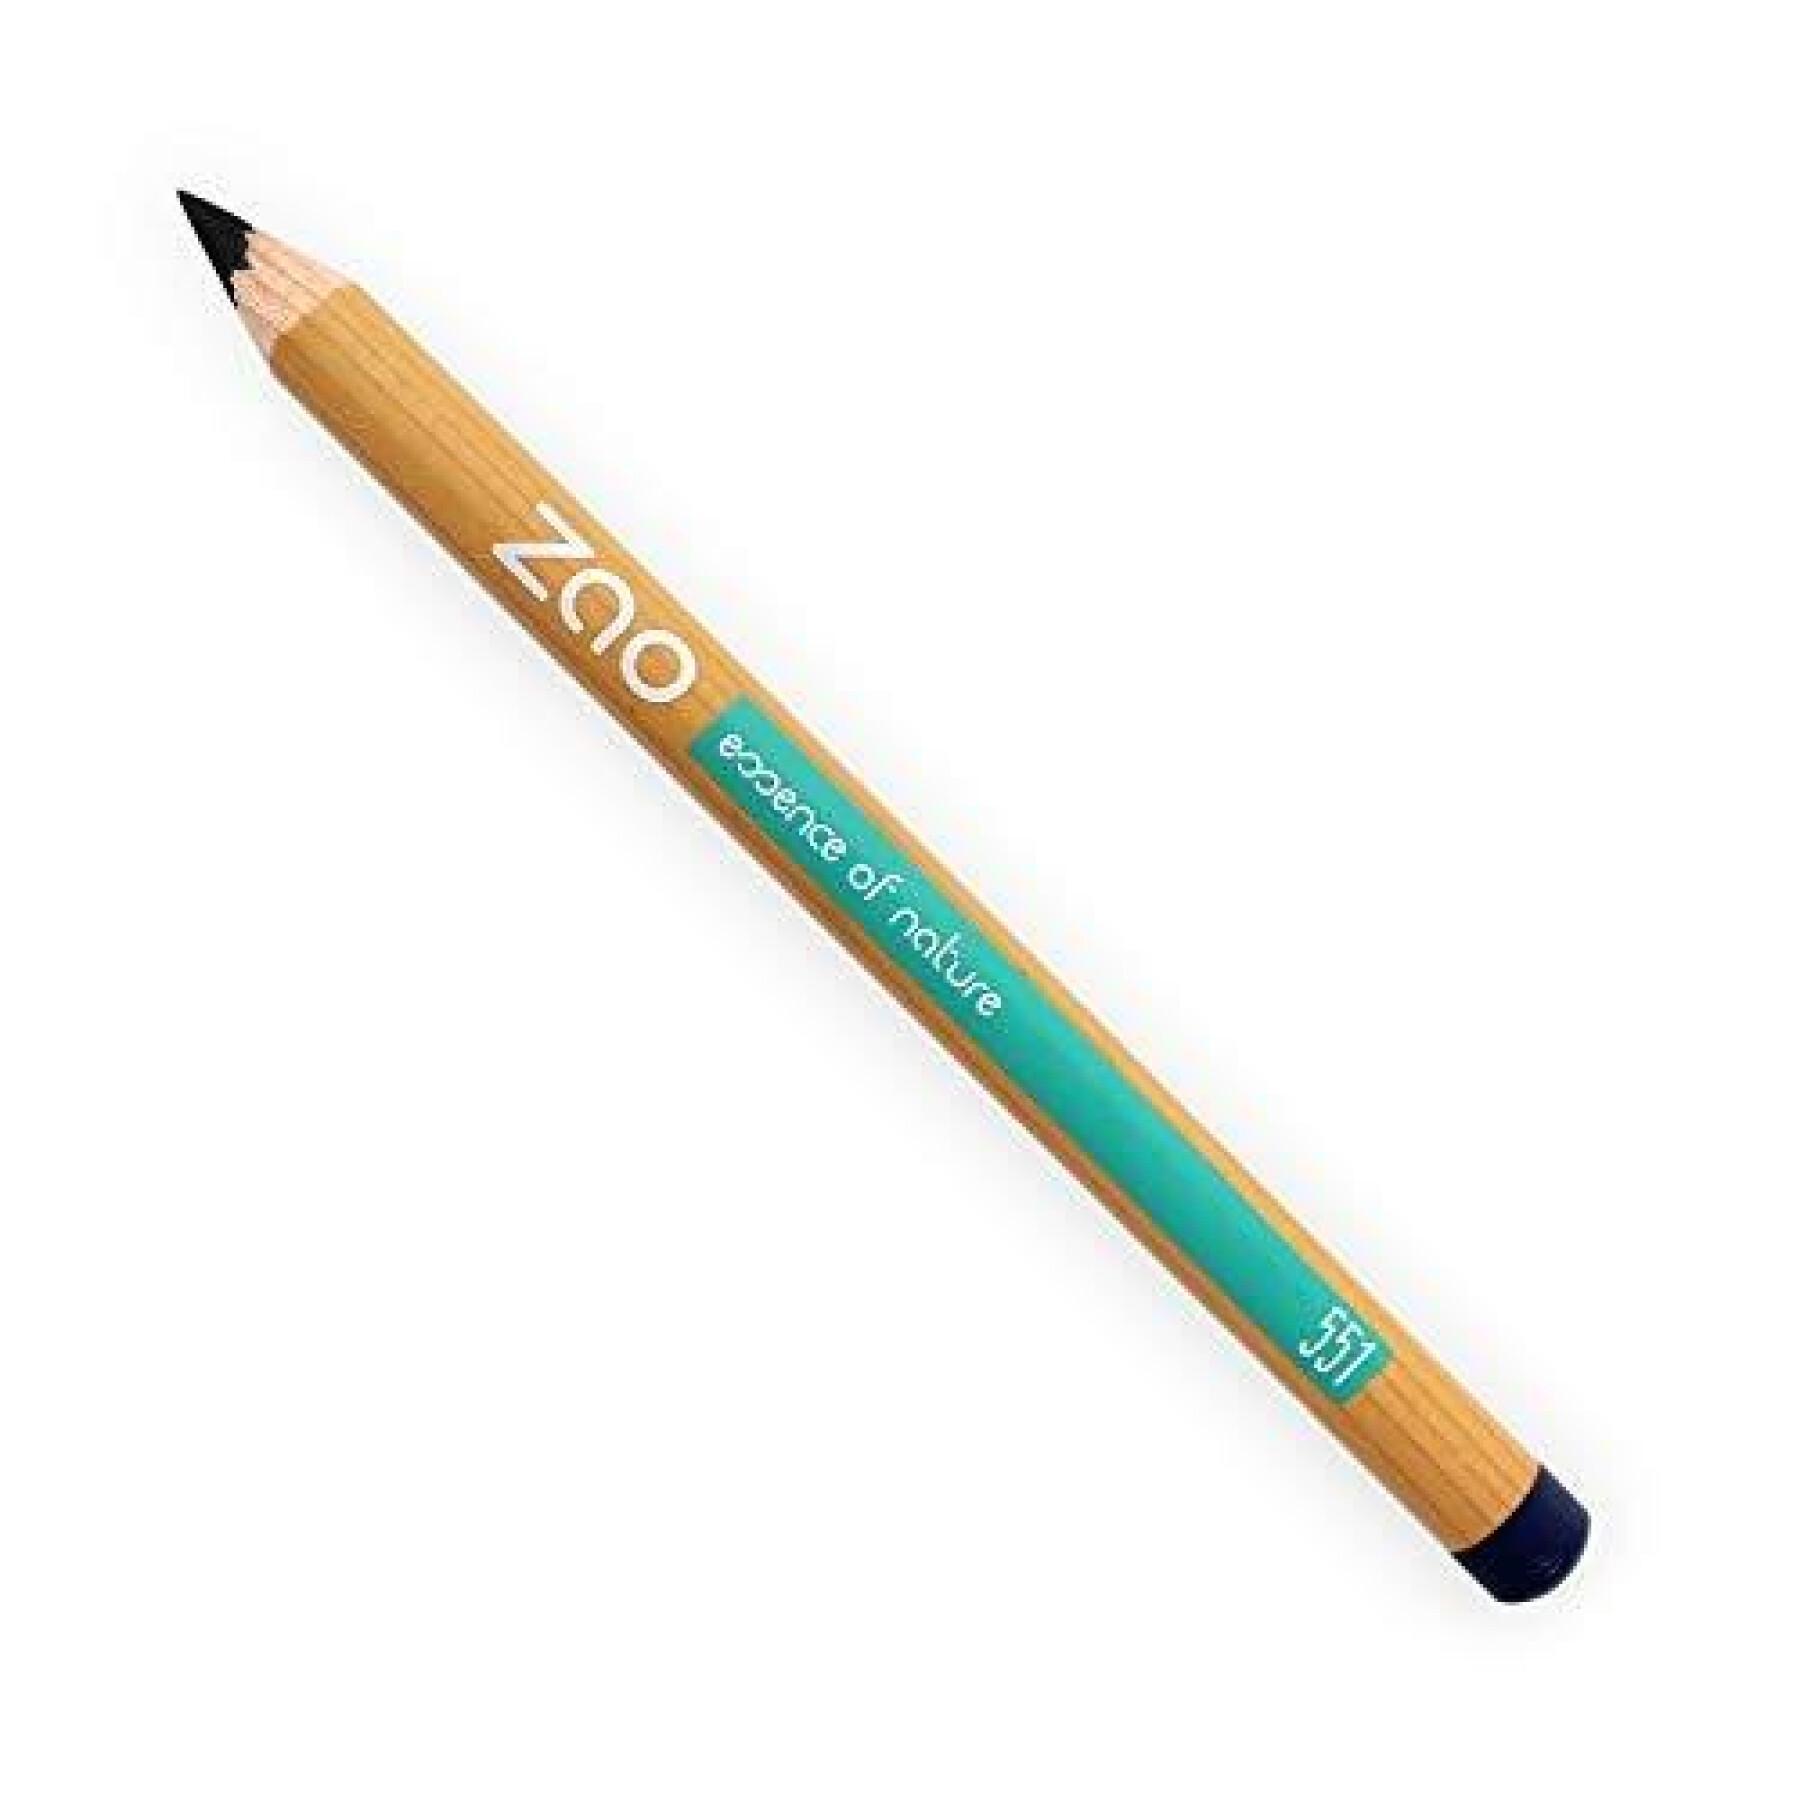 Multipurpose pencil 551 black woman Zao